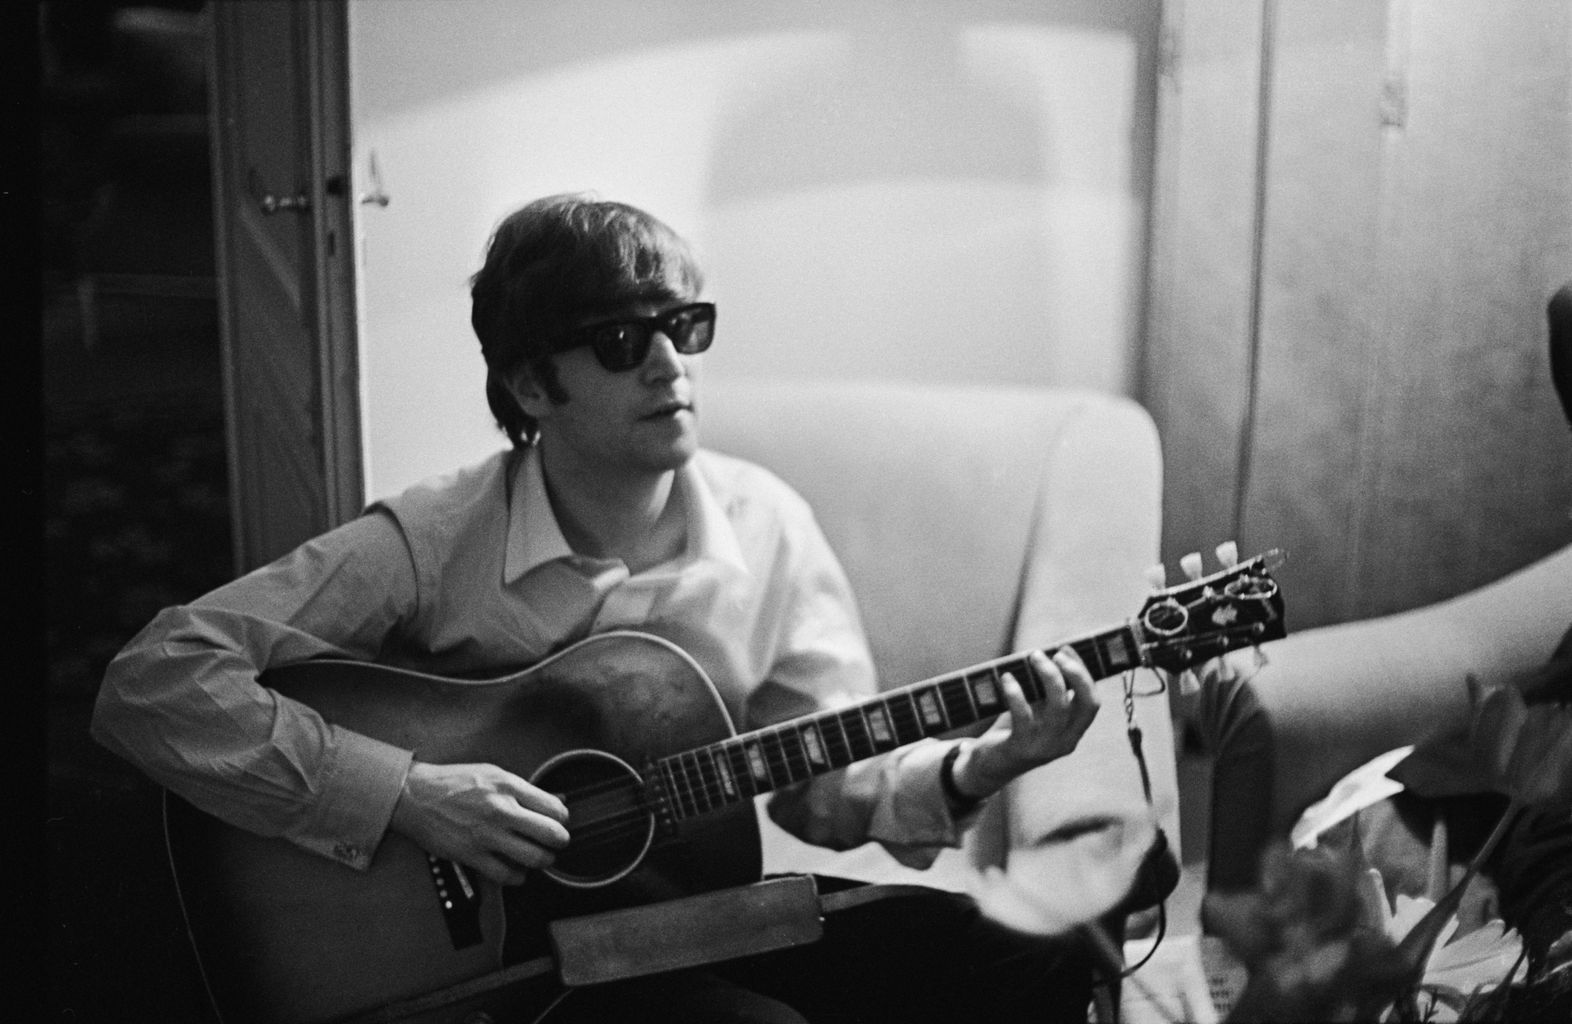 John Lennon was 